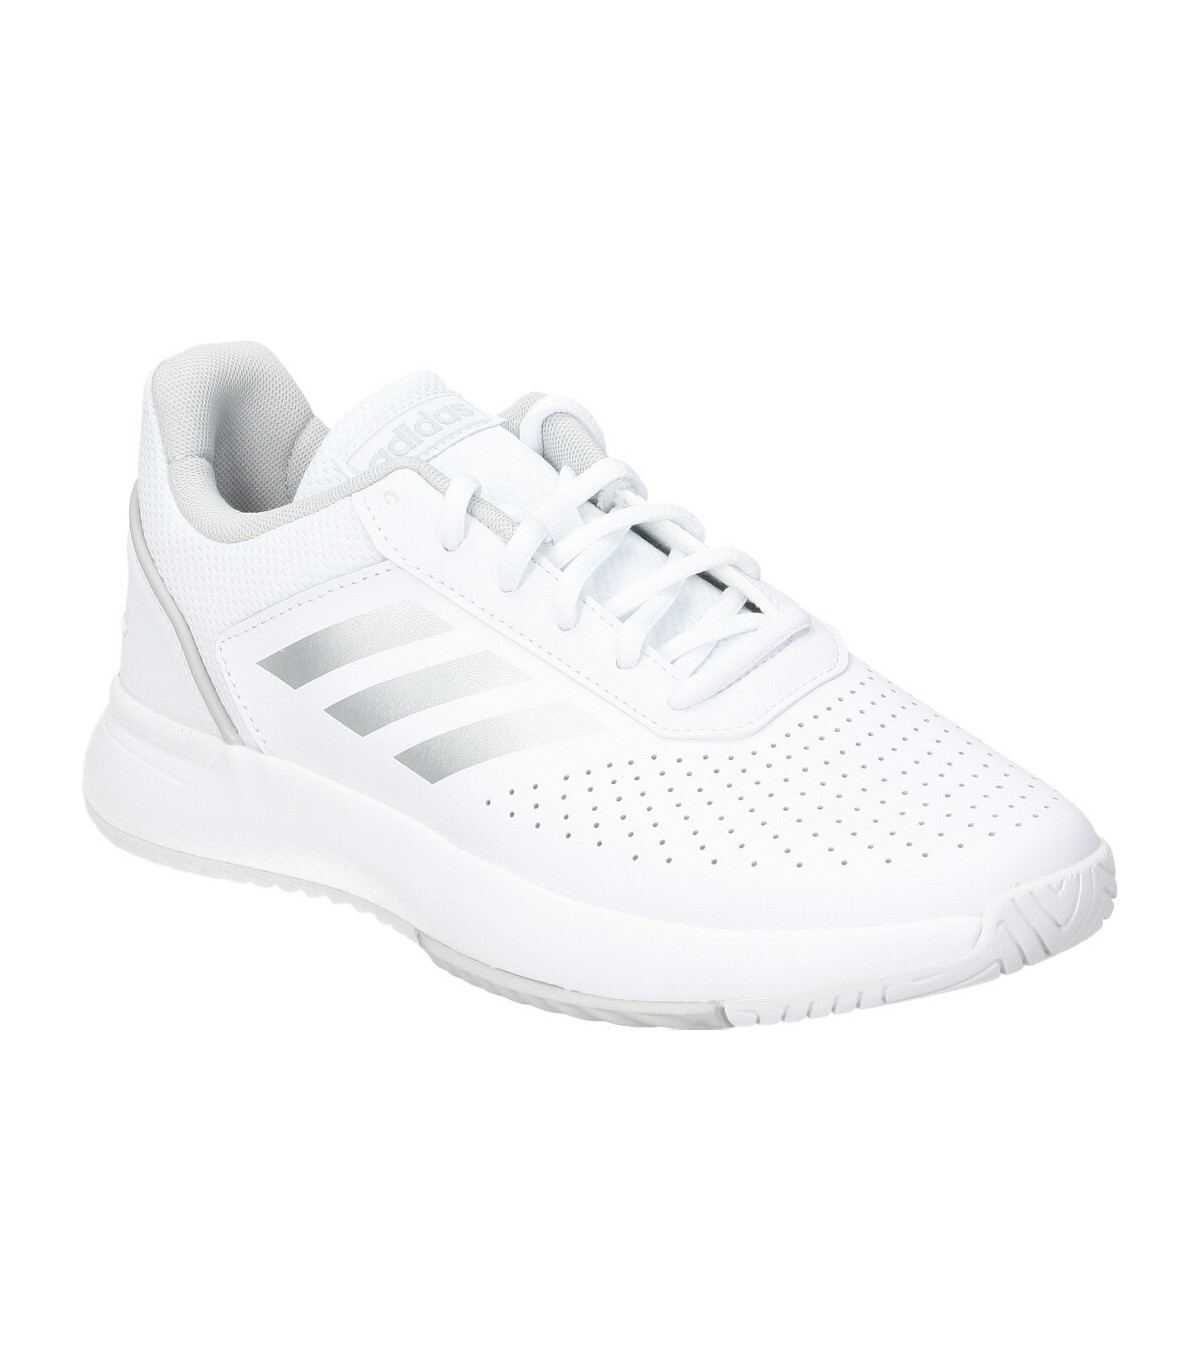 Insignia Ahora Especificado Zapatillas deportivas color blanco adidas Court Smash f36262 mujer